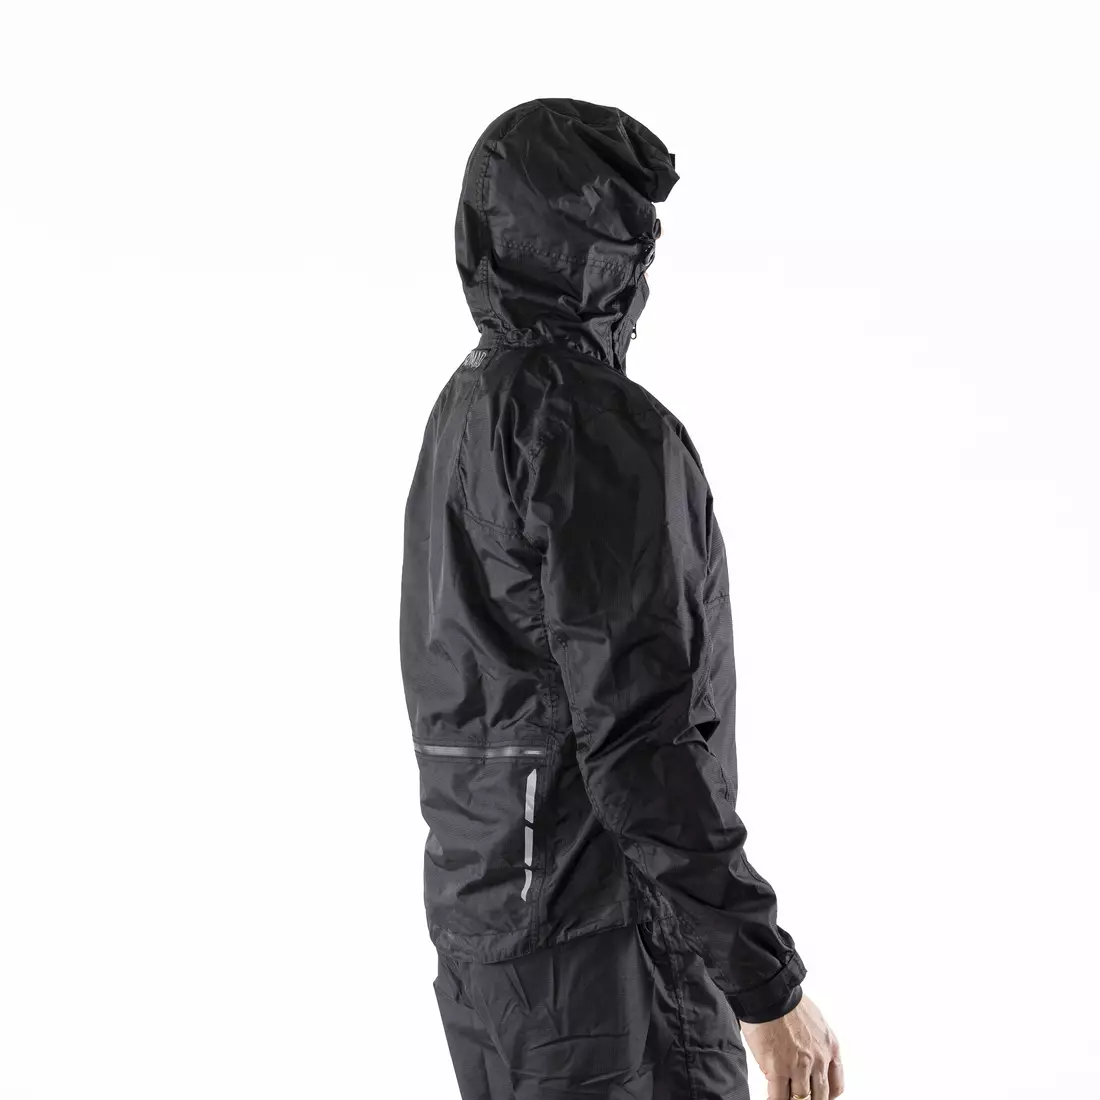 KAYMAQ J2MH men's hooded rain cycling jacket, black